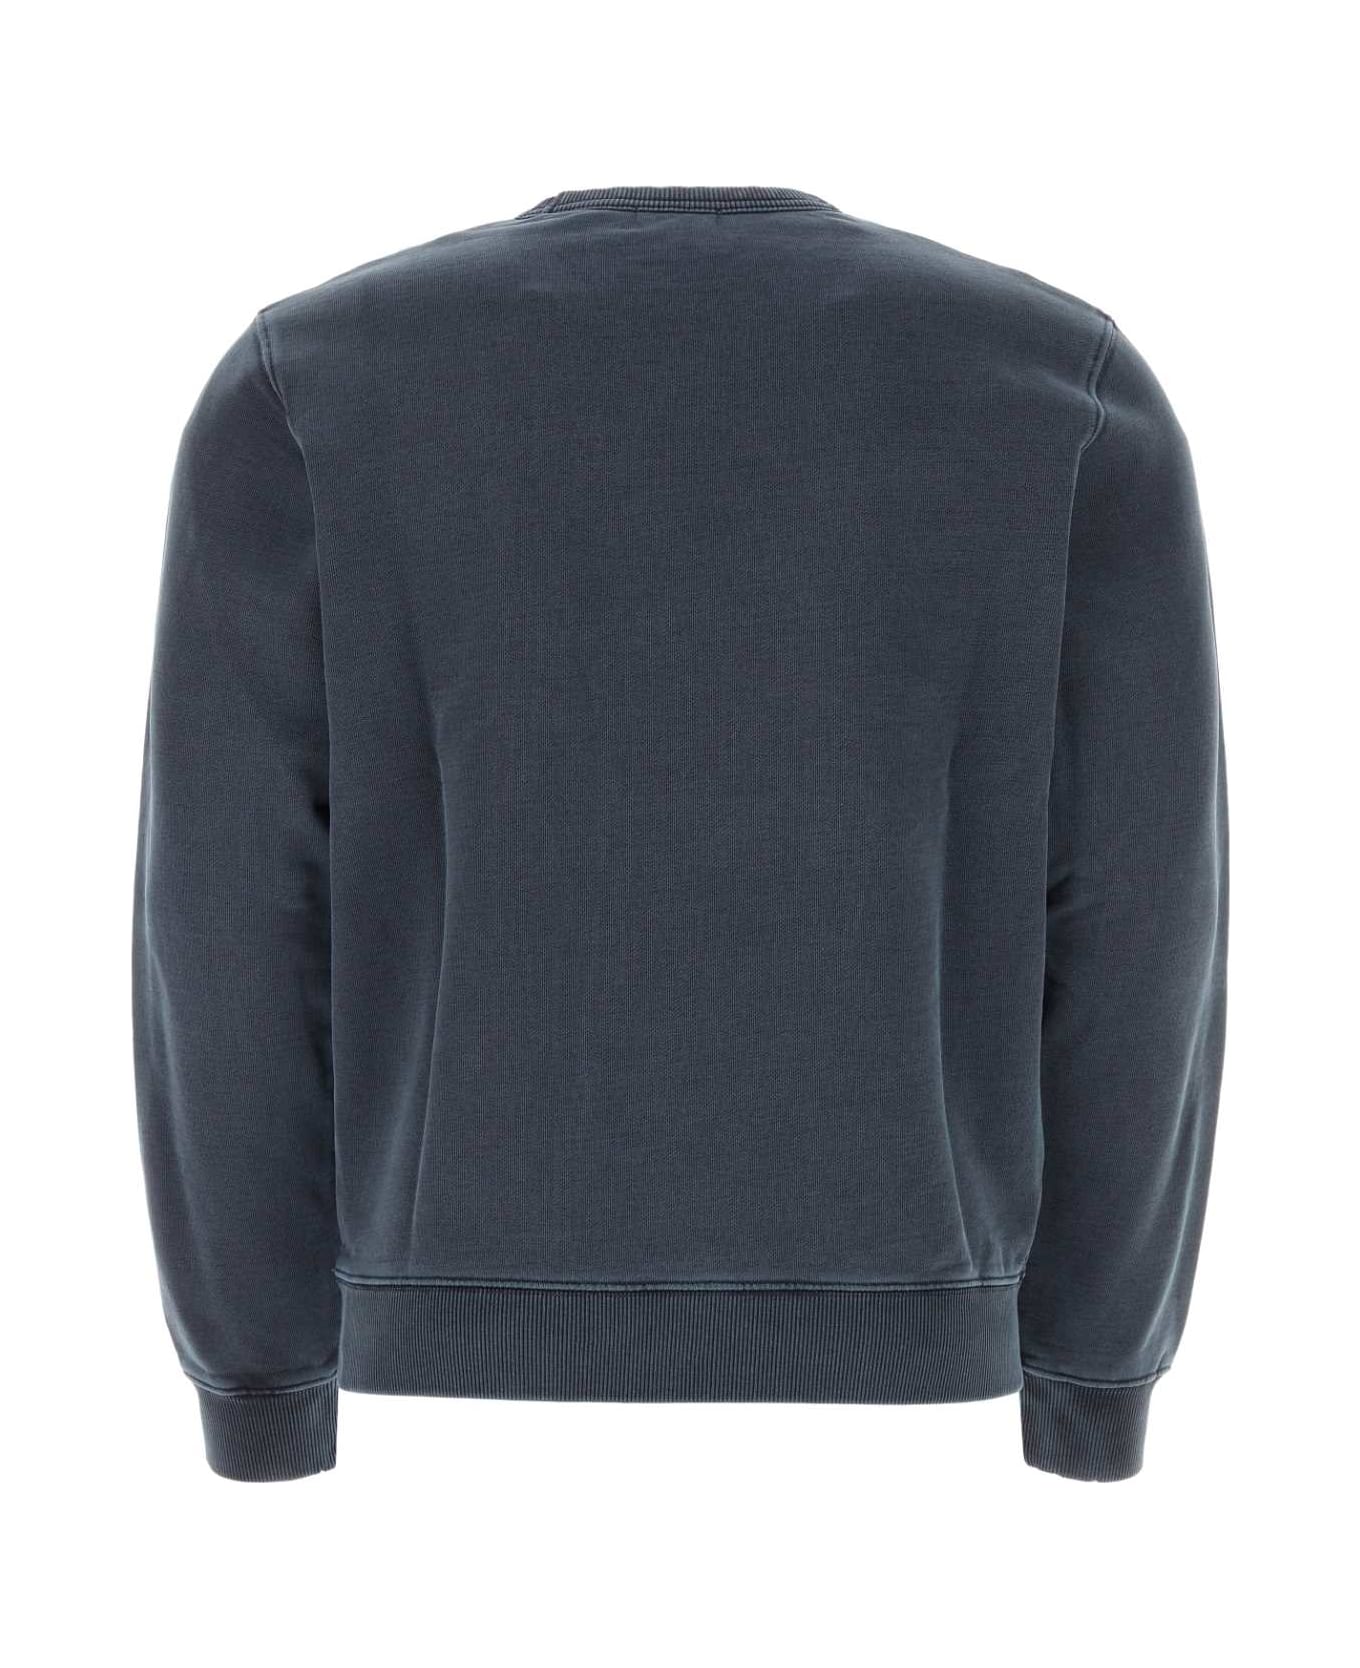 Woolrich Denim Blue Cotton Sweatshirt - 3989